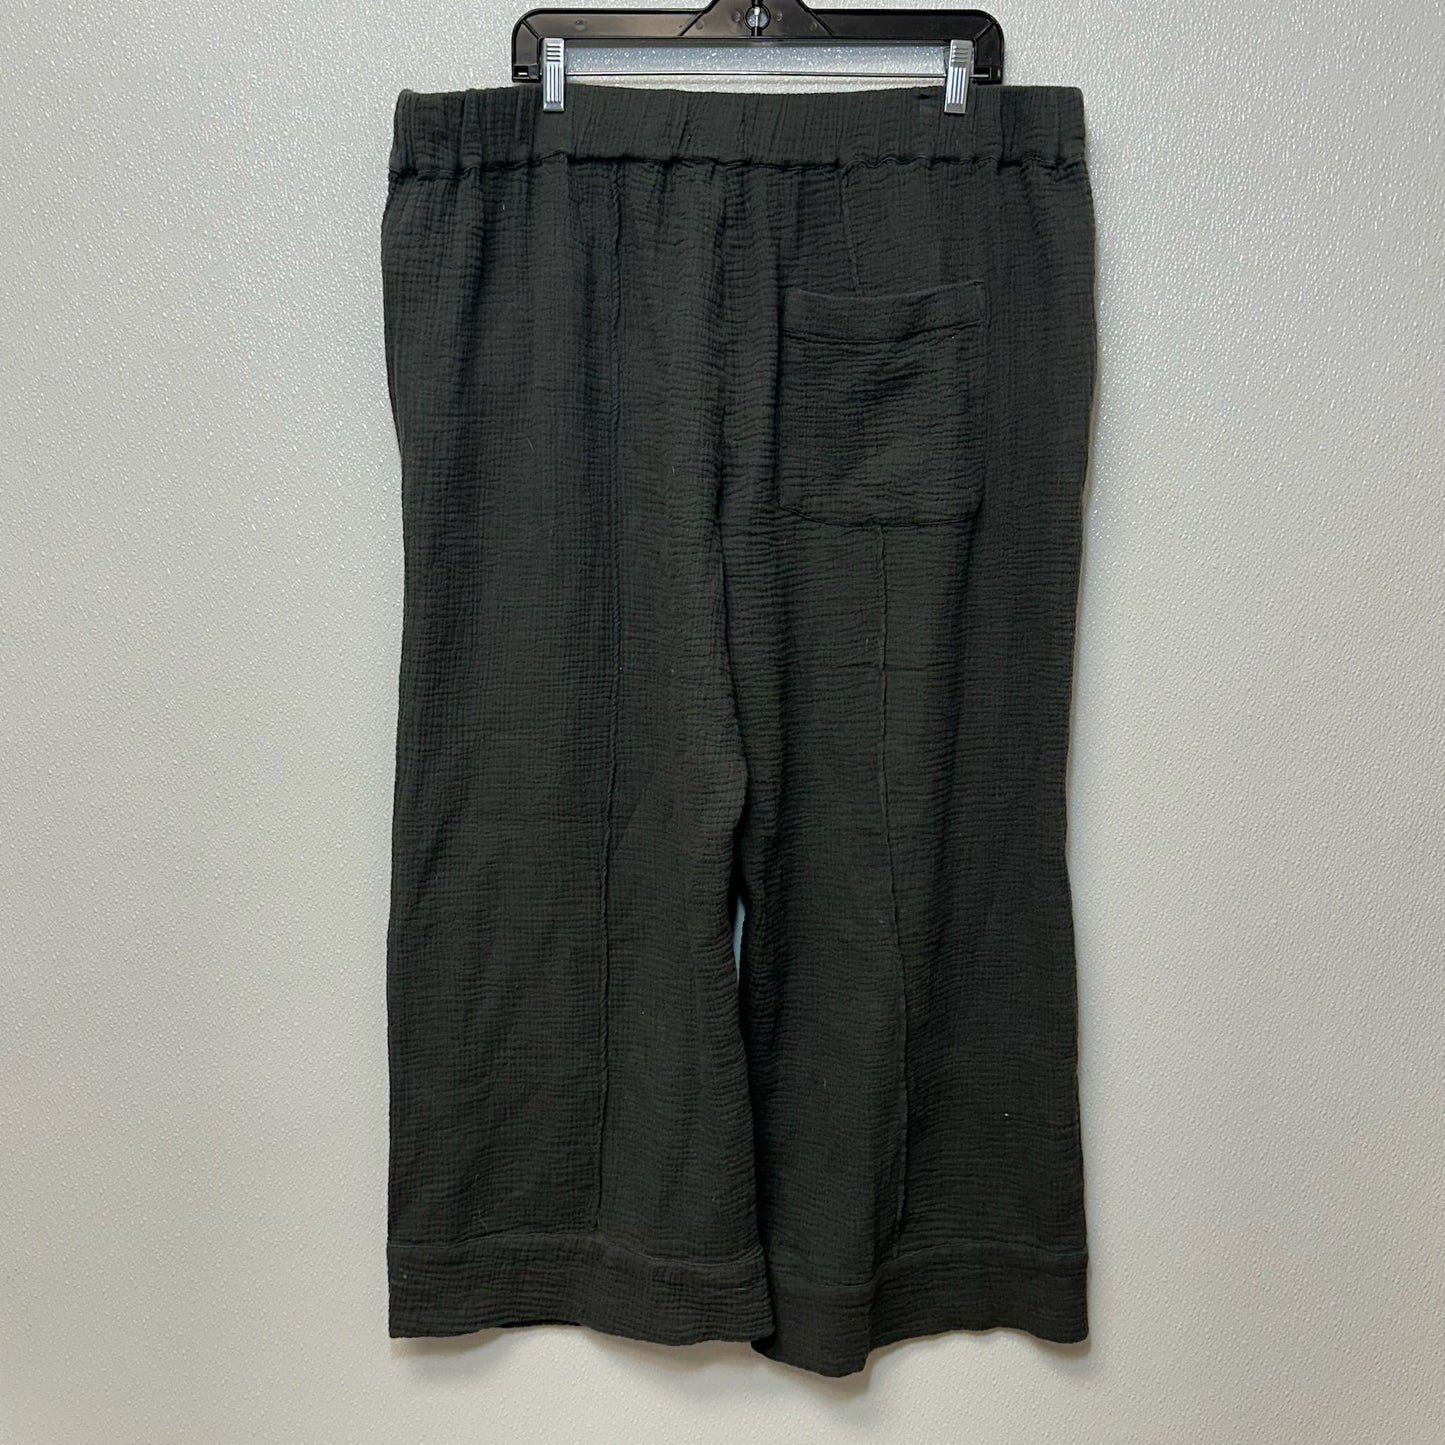 Olive Pants Linen Clothes Mentor, Size Xl